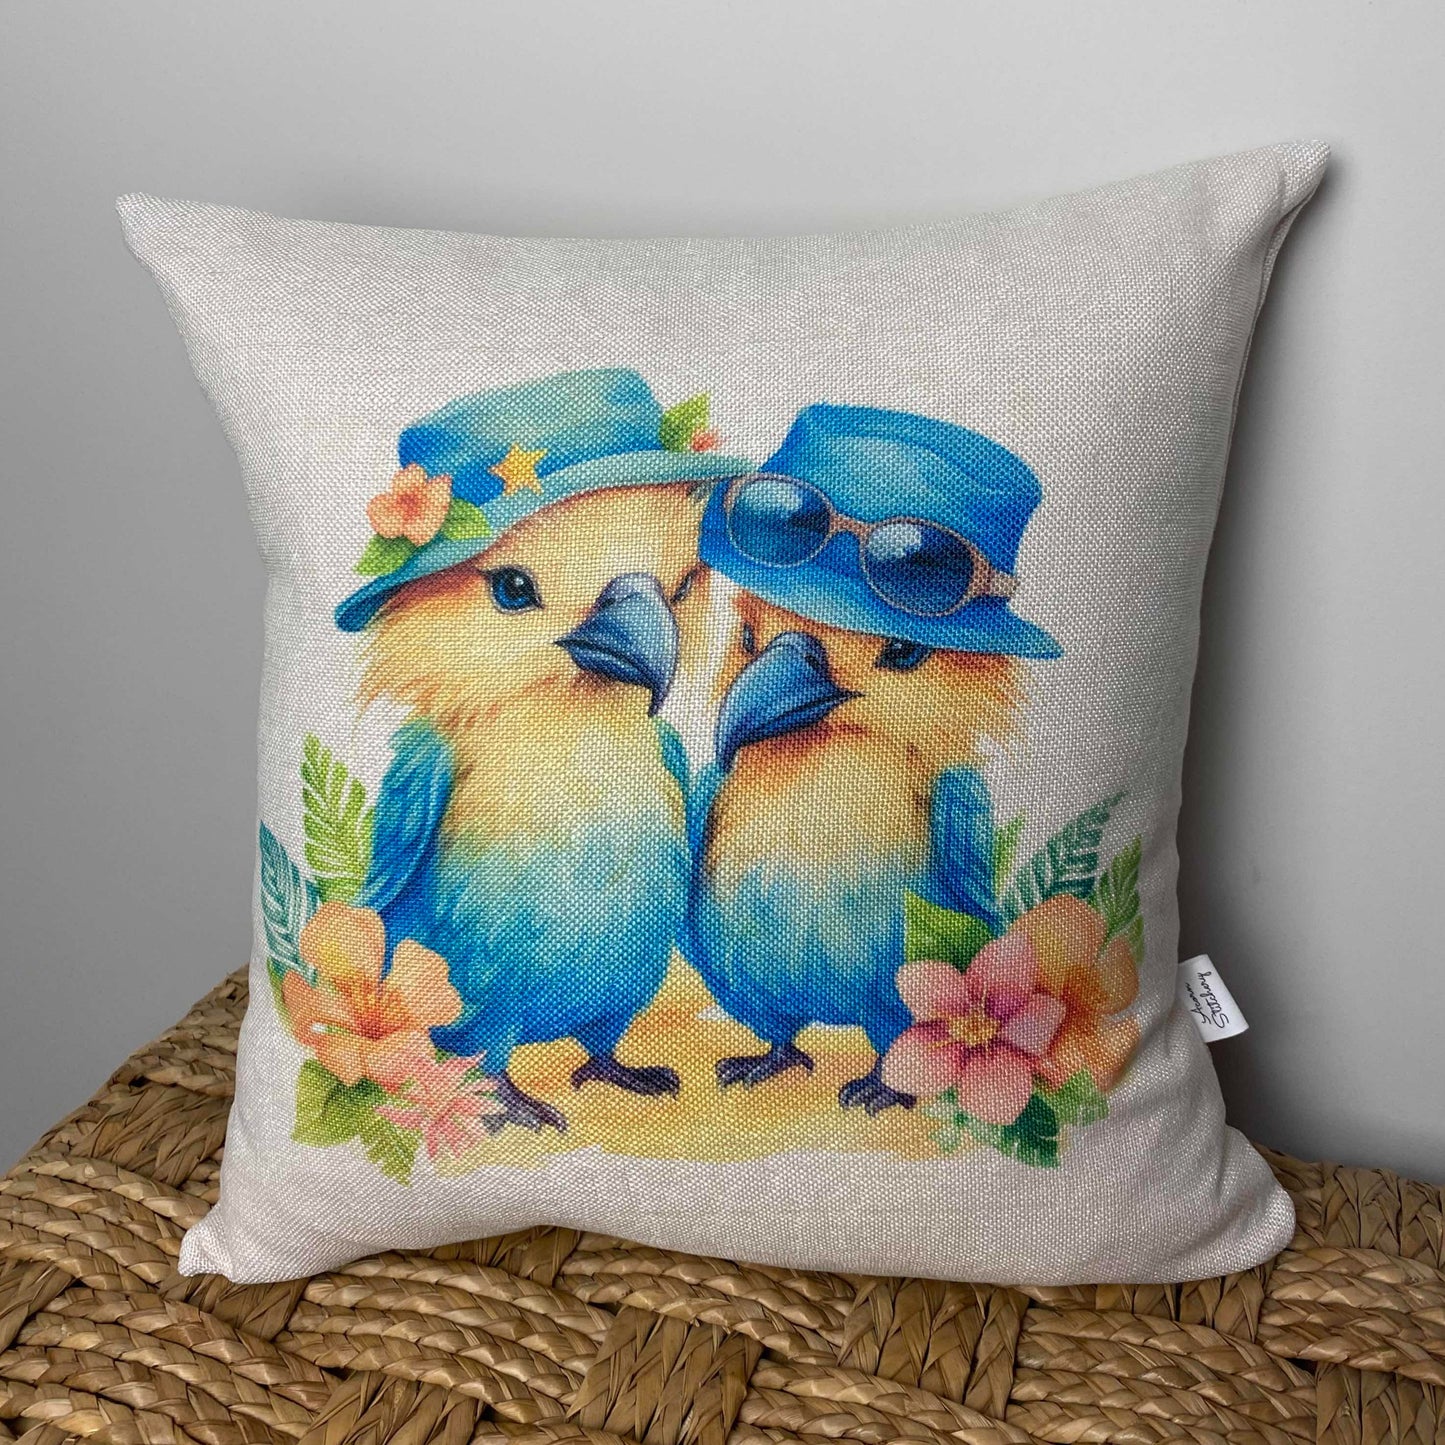 Bird Couple On Vacation pillow 18" x 18"